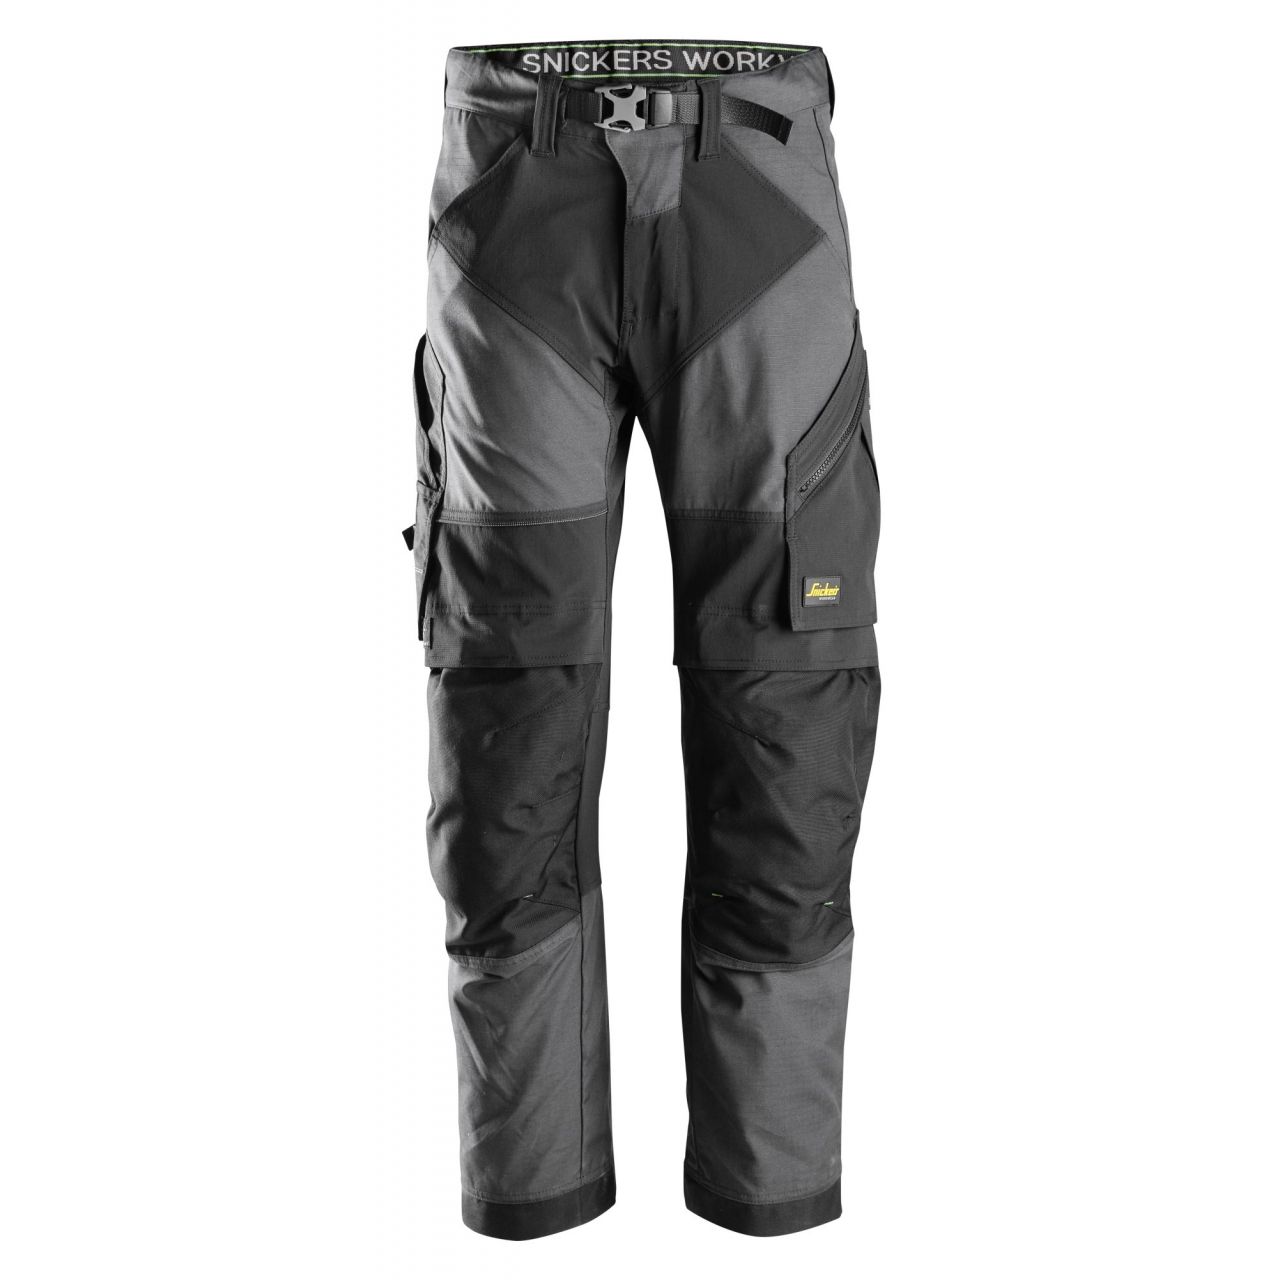 Pantalon FlexiWork+ gris acero-negro talla 062